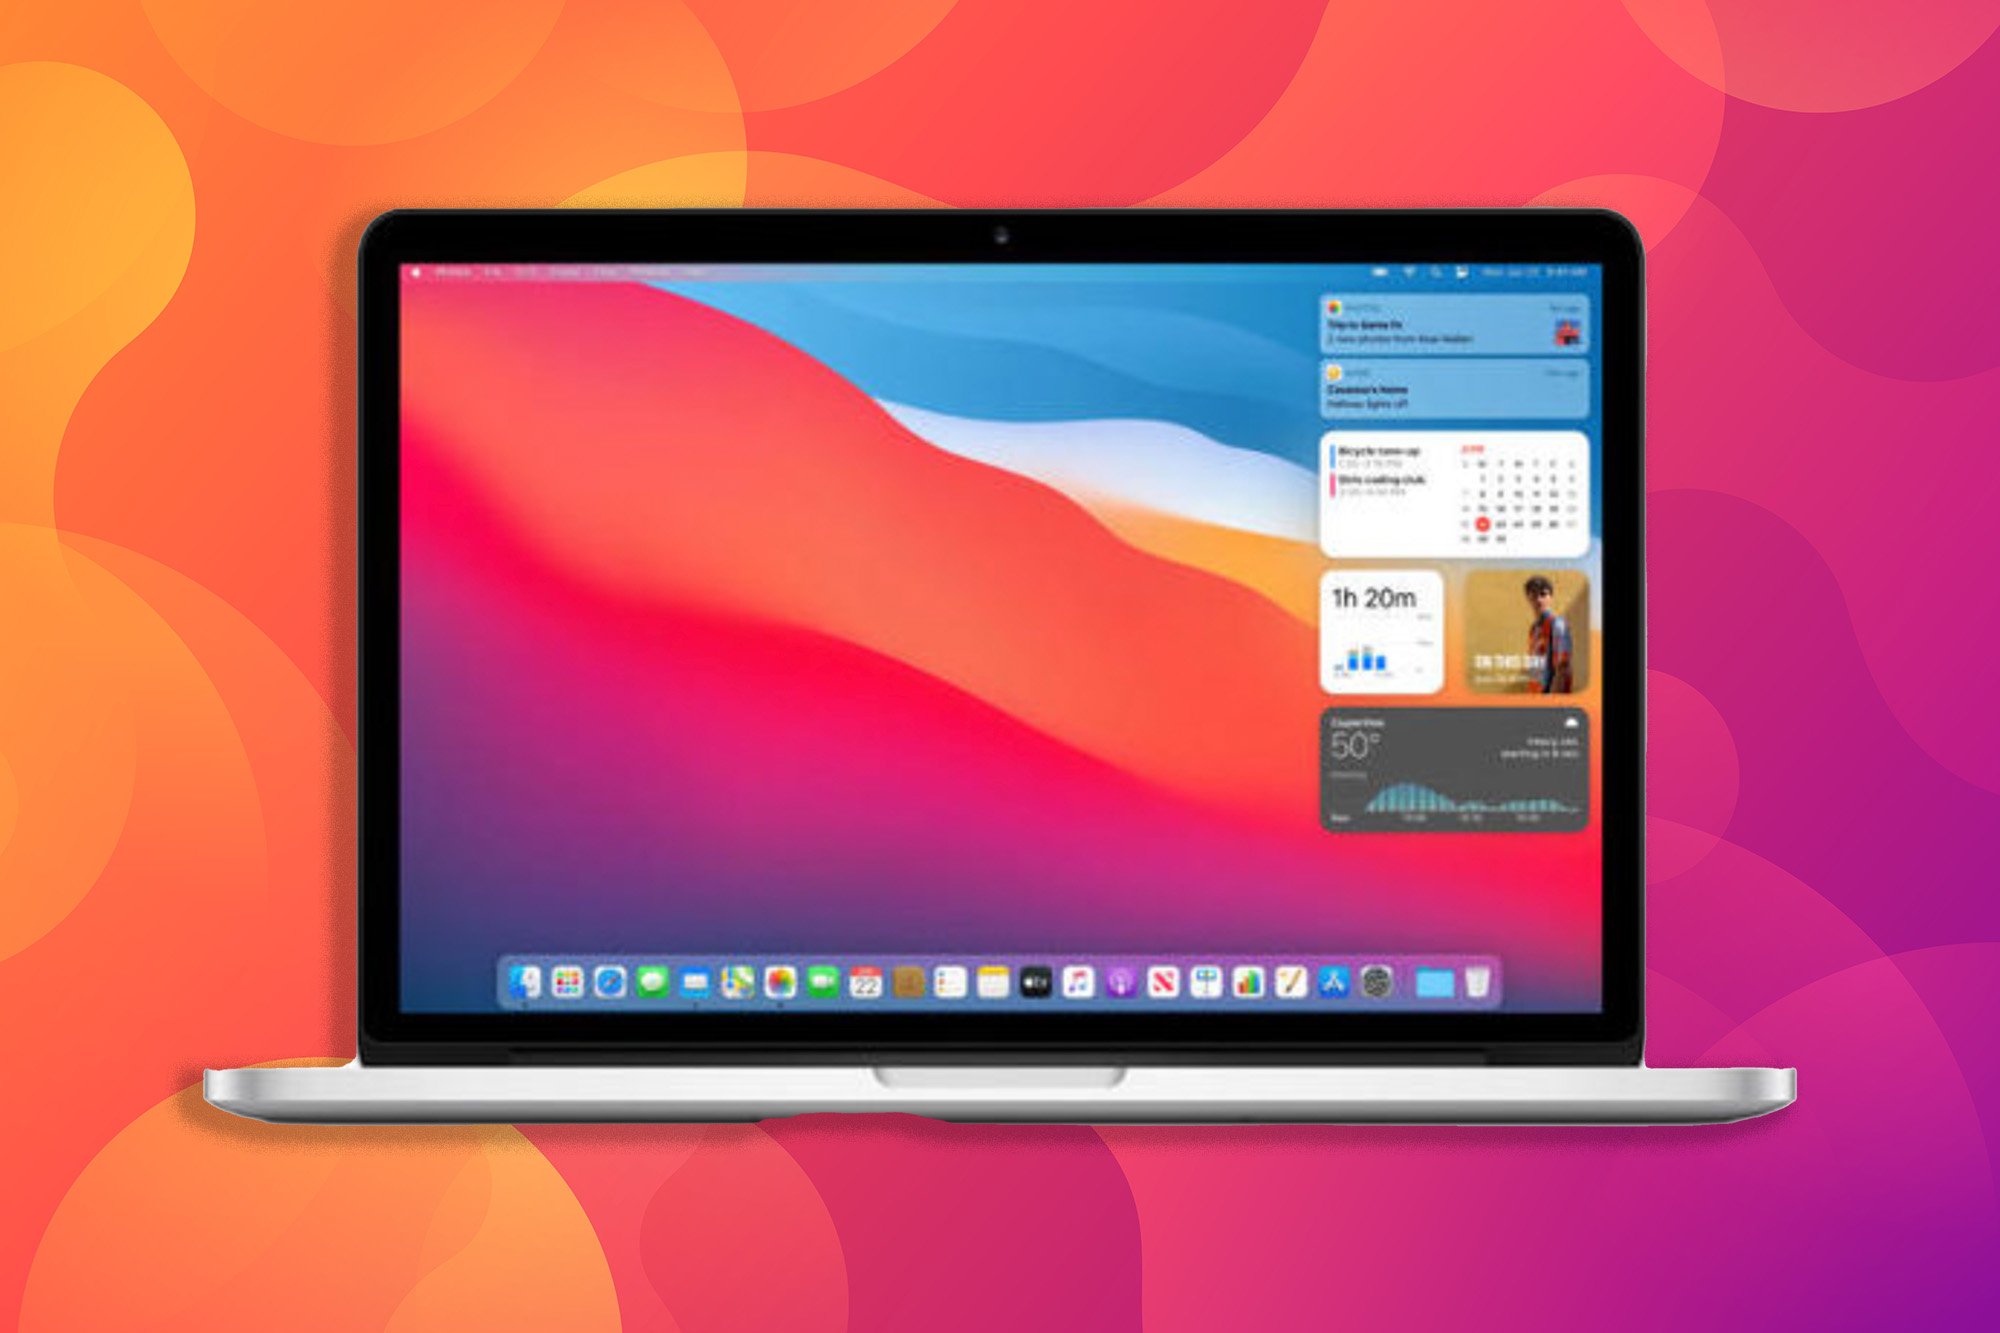 apple mac pro desktop best deals refurbished